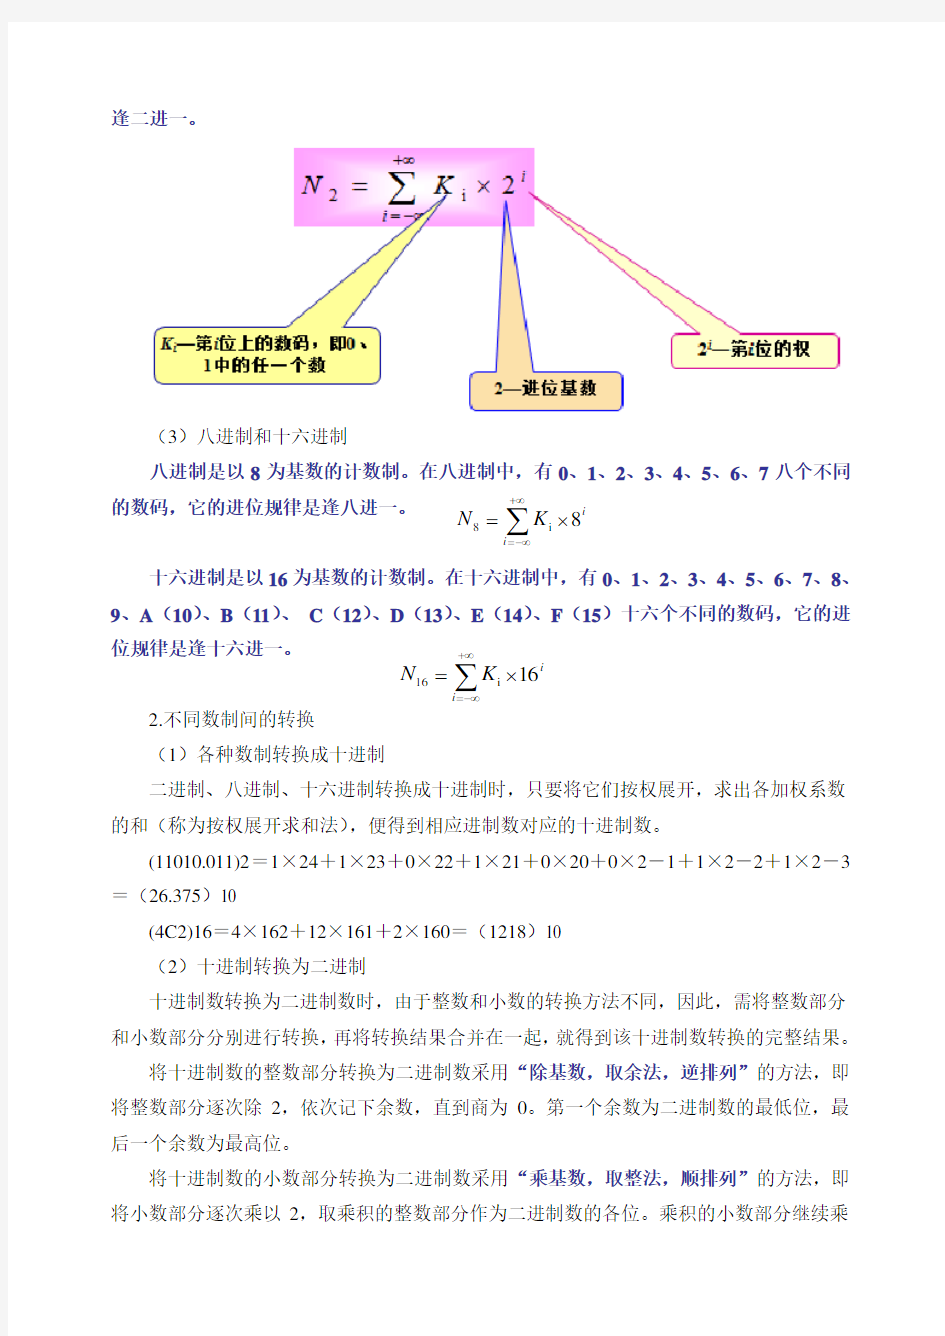 第11章 逻辑代数基础与组合逻辑电路[23页]